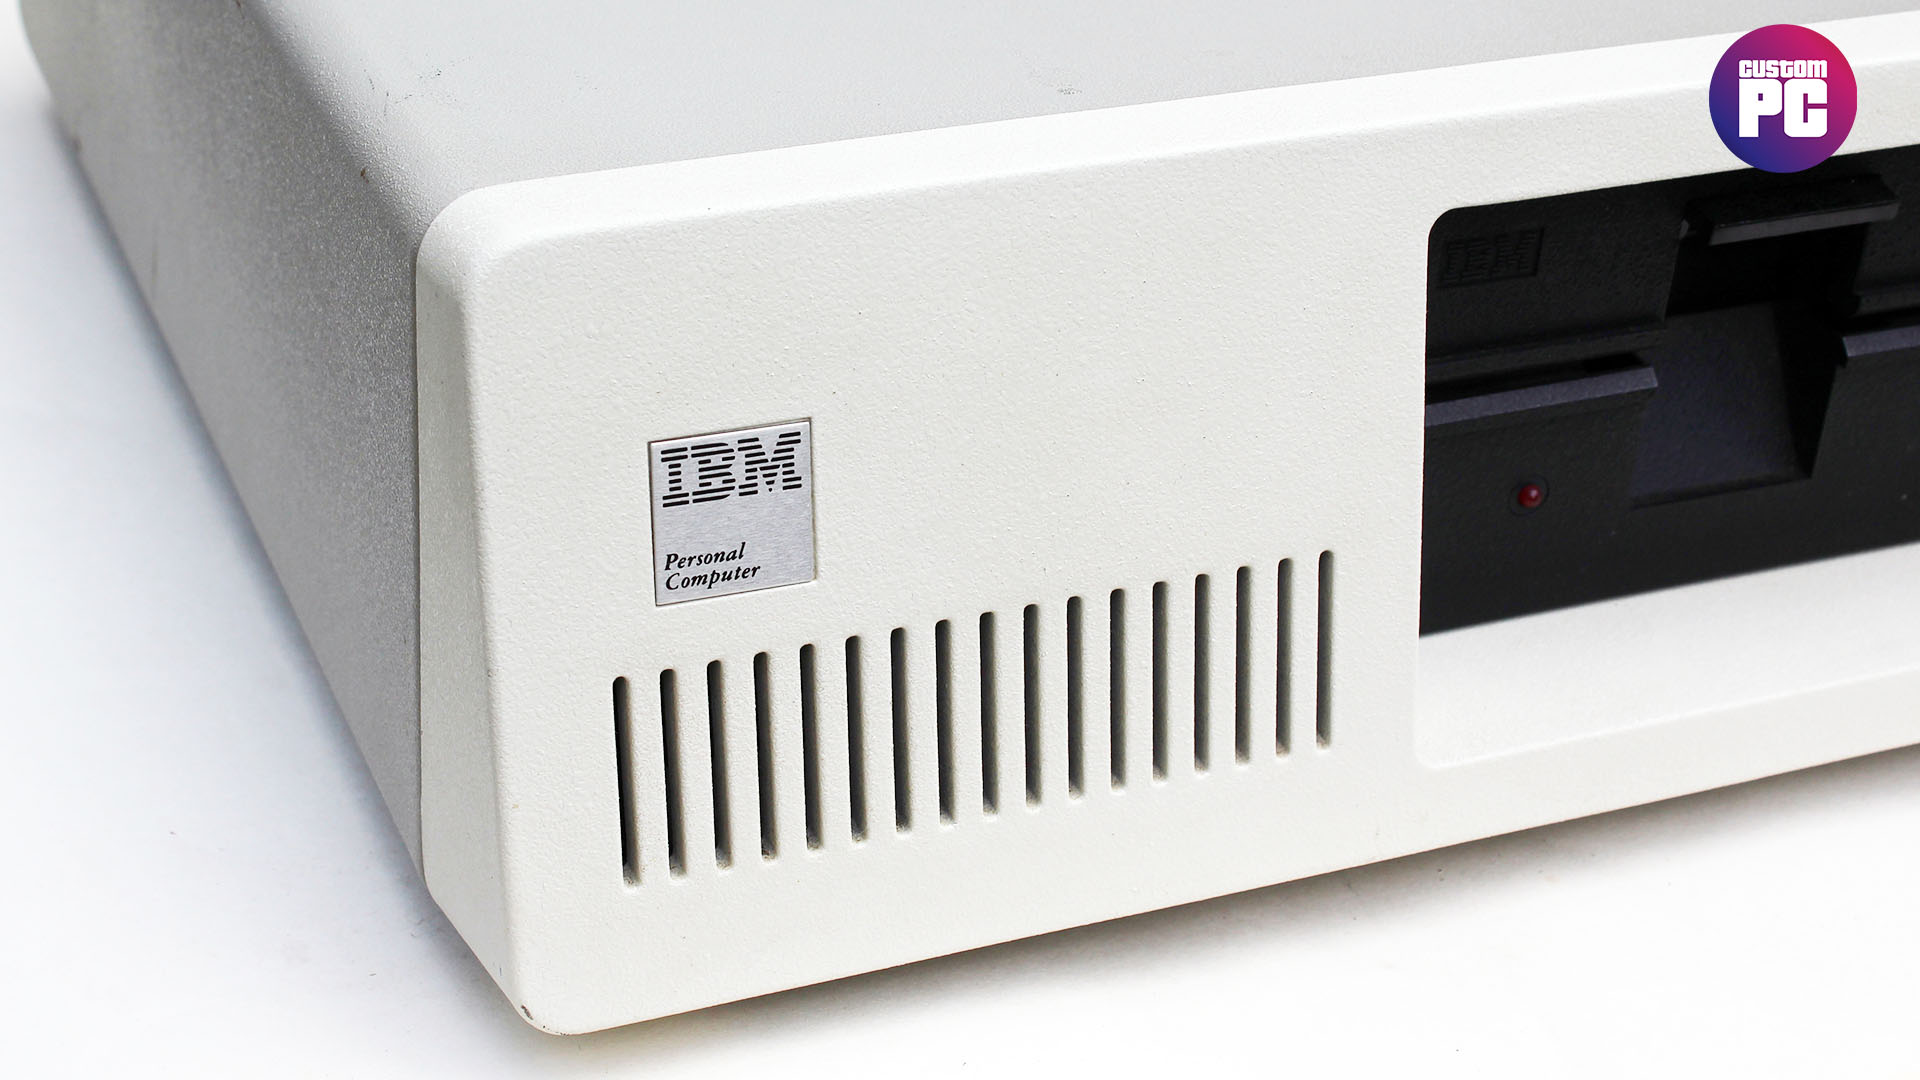 IBM PC 5150 exterior corner